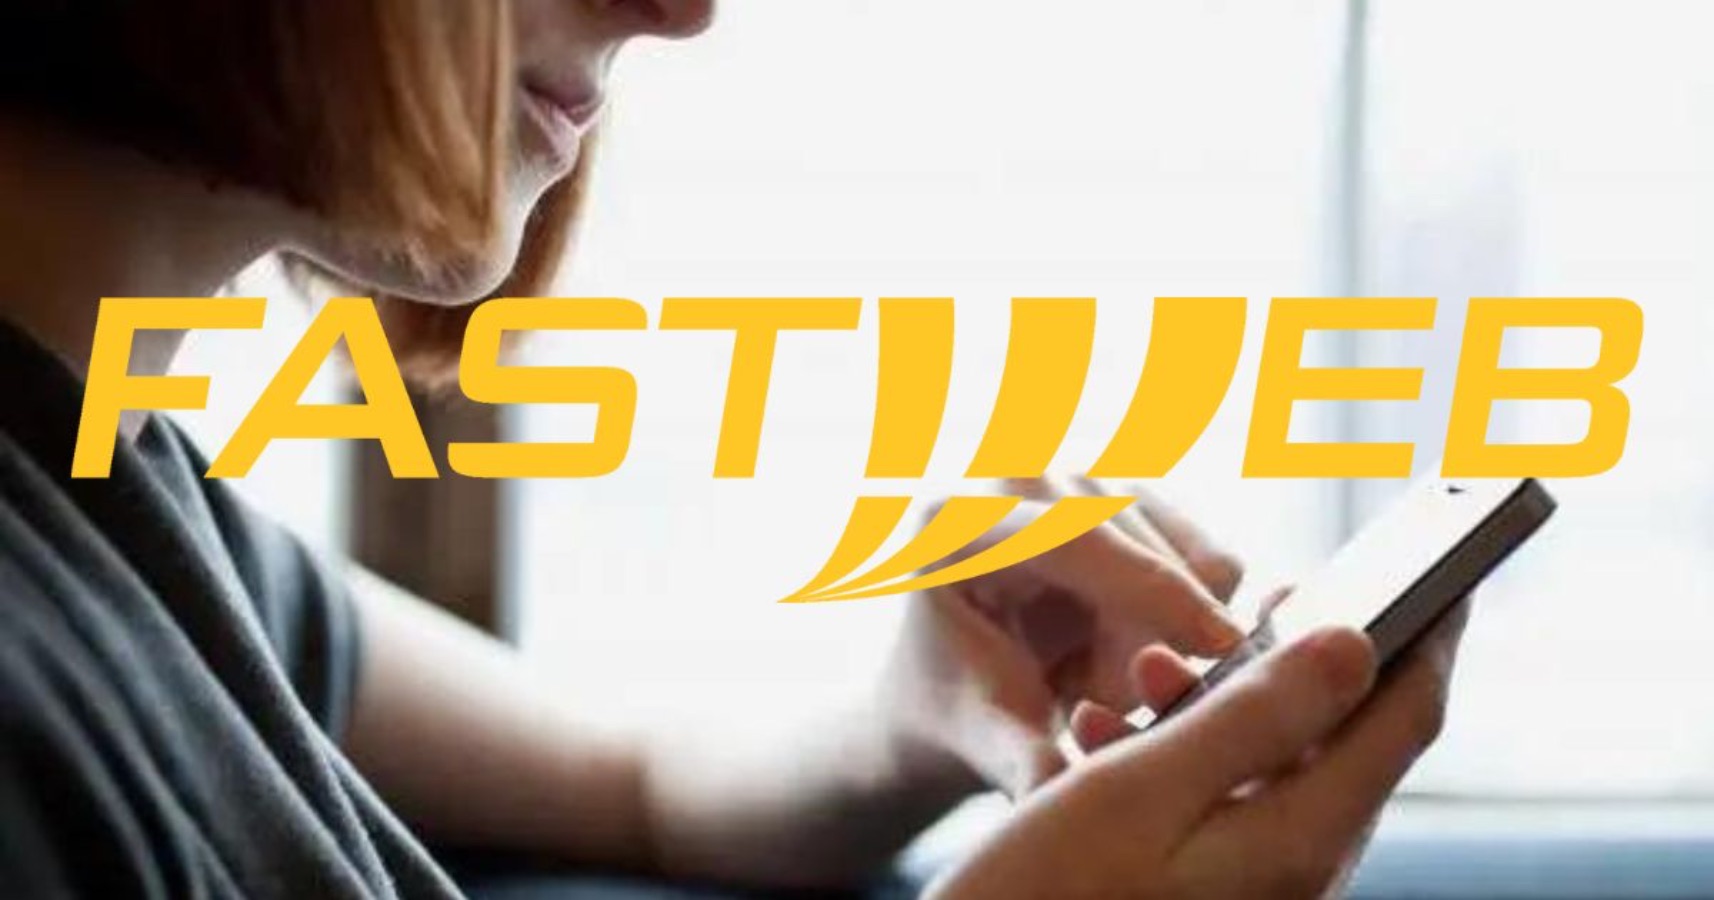 Fastweb, l'offerta in REGALO per 3 mesi con 150 giga